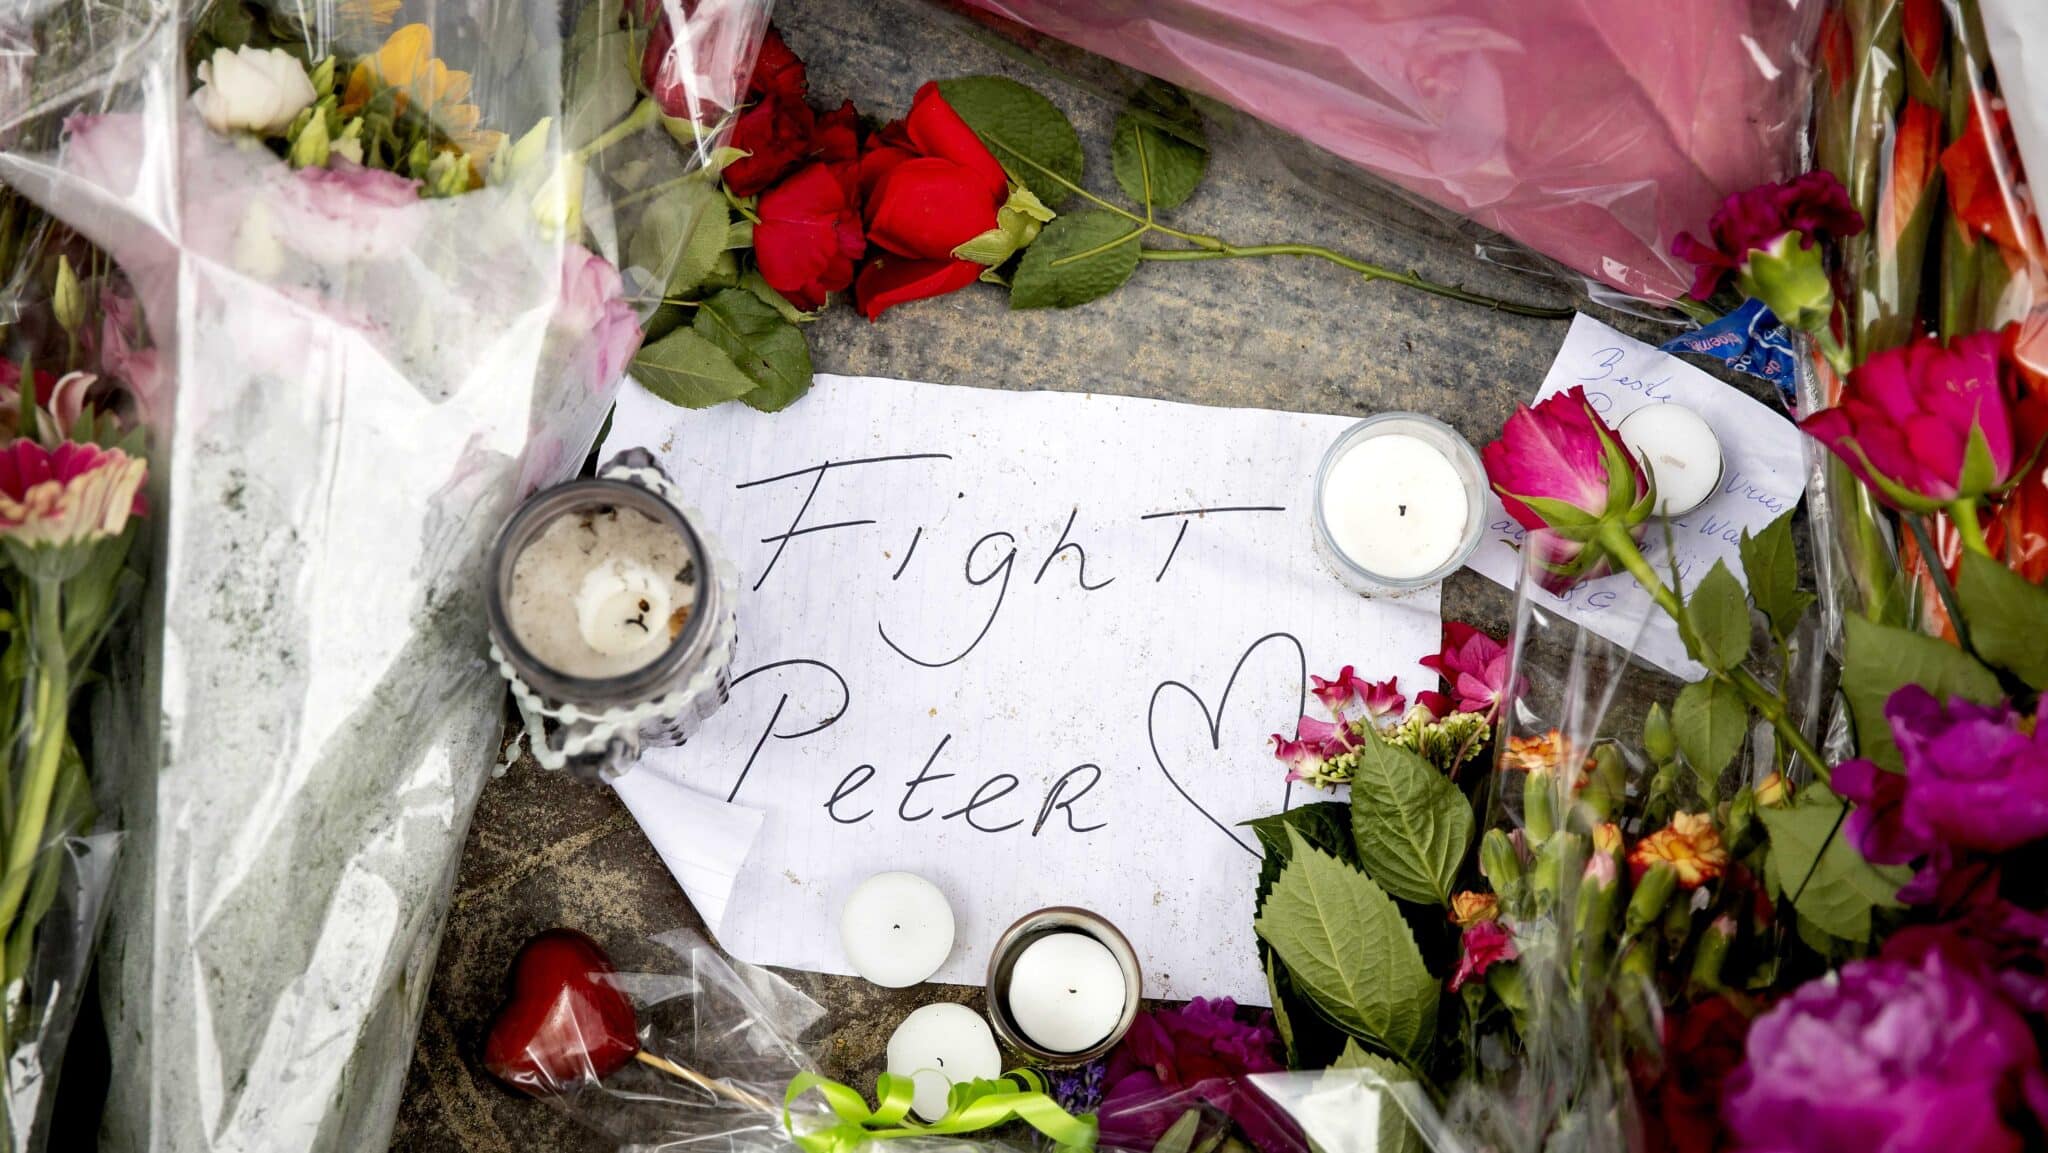 Mensaje en recuerdo a Peter de Vries en el lugar de su asesinato en pleno centro de Ámsterdam: "Lucha Peter"